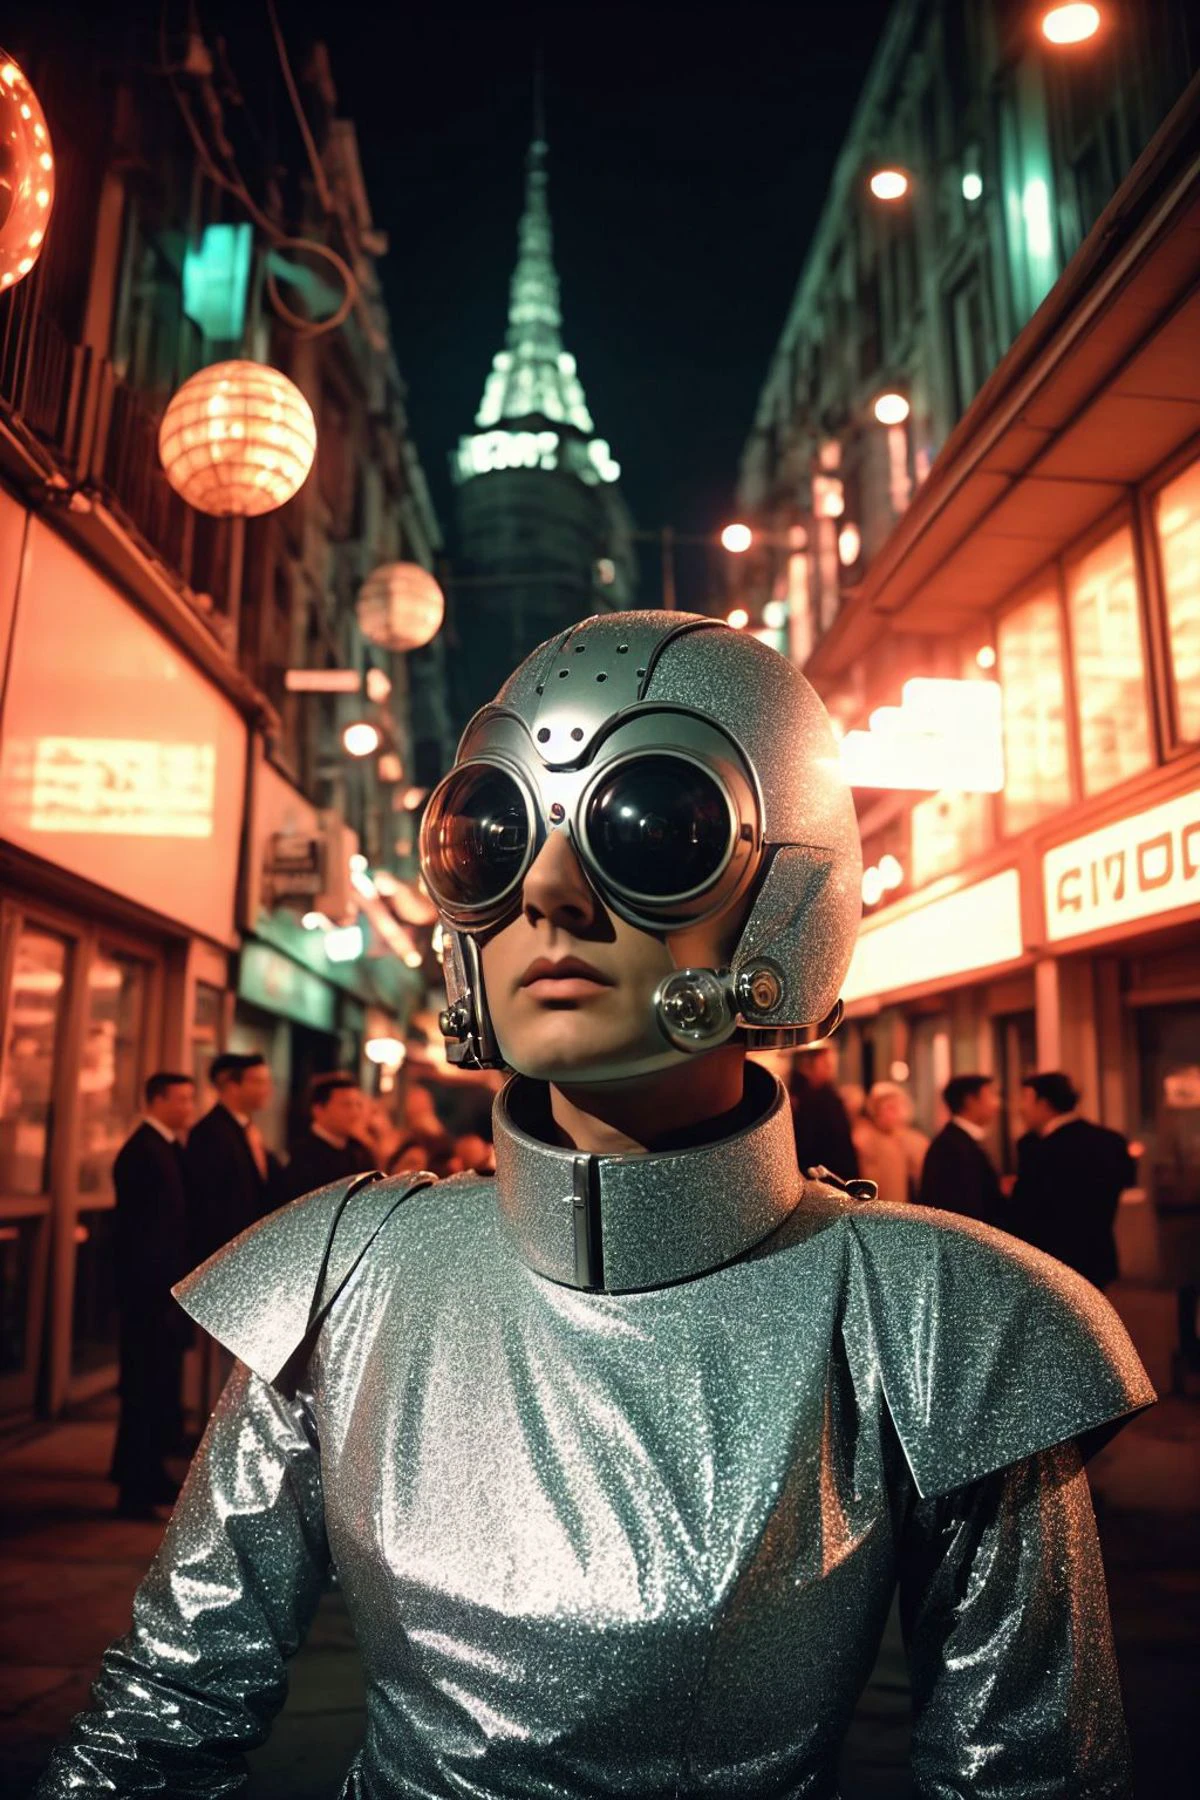 來自 20 世紀 60 年代蘇聯科幻電影的模擬電影劇照,  裝甲機器人將軍, 机械零件, 皺起眉頭, 強烈的凝視, 表情嚴肅, 大胆的立场, (SFW:1.2), 化身機庫內部, 背景中的機器人軍隊, 閃爍燈, 空間華麗別緻, 媚俗的,電影般的,古怪的,閃光,復古的, 銳利的焦點, 广角镜头, 风景